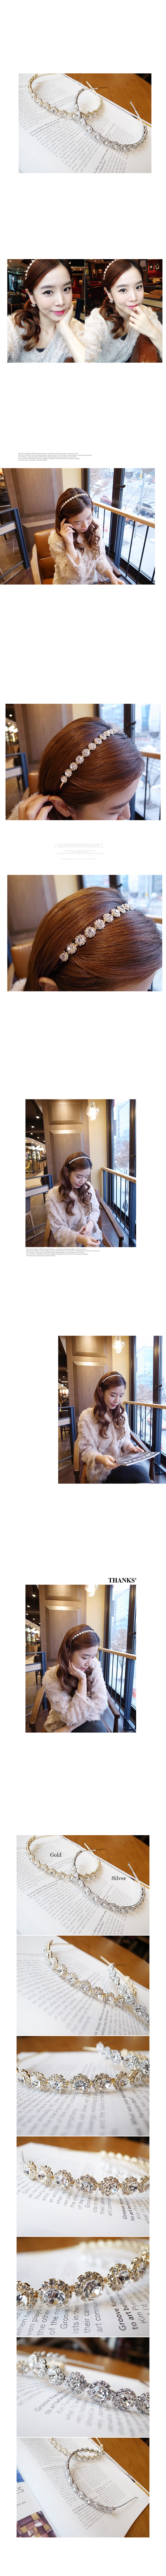 韓國 NaniWorld Veronica 晶鑽風髮箍 #2651 銀色